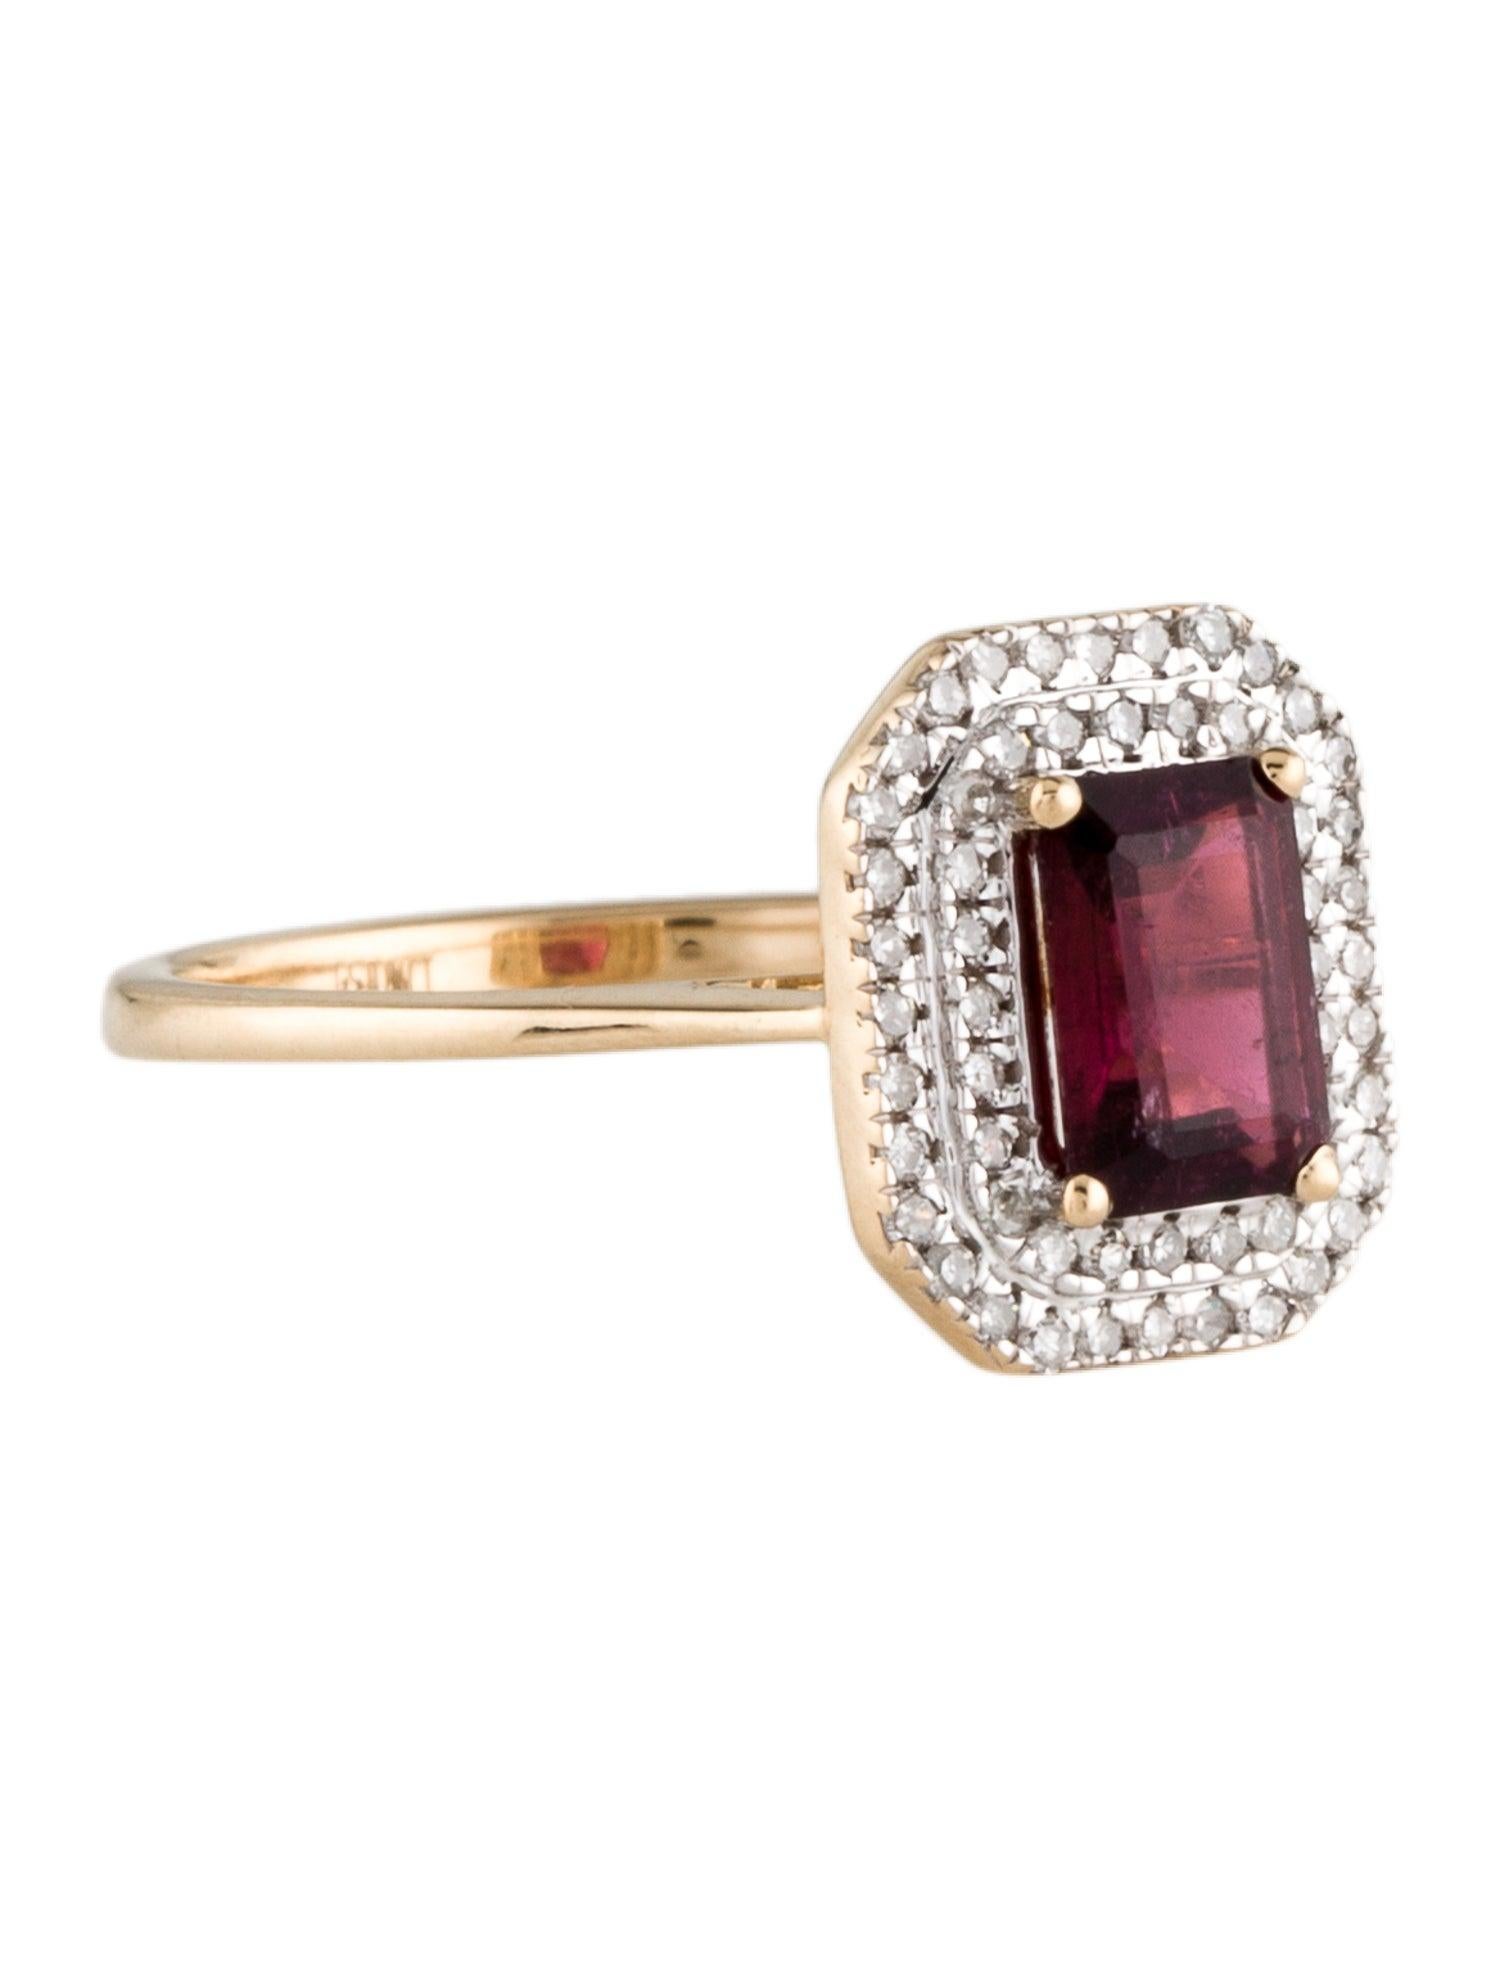 Eleganz trifft auf die Brillanz der Natur in unserem 'Rose Radiance' Rubellit- und Diamant-Oktagon-Ring, einem Meisterwerk aus der Kollektion Vibrant Pink Treasures von Jeweltique. Dieser mit Präzision und Leidenschaft gefertigte Ring ist eine